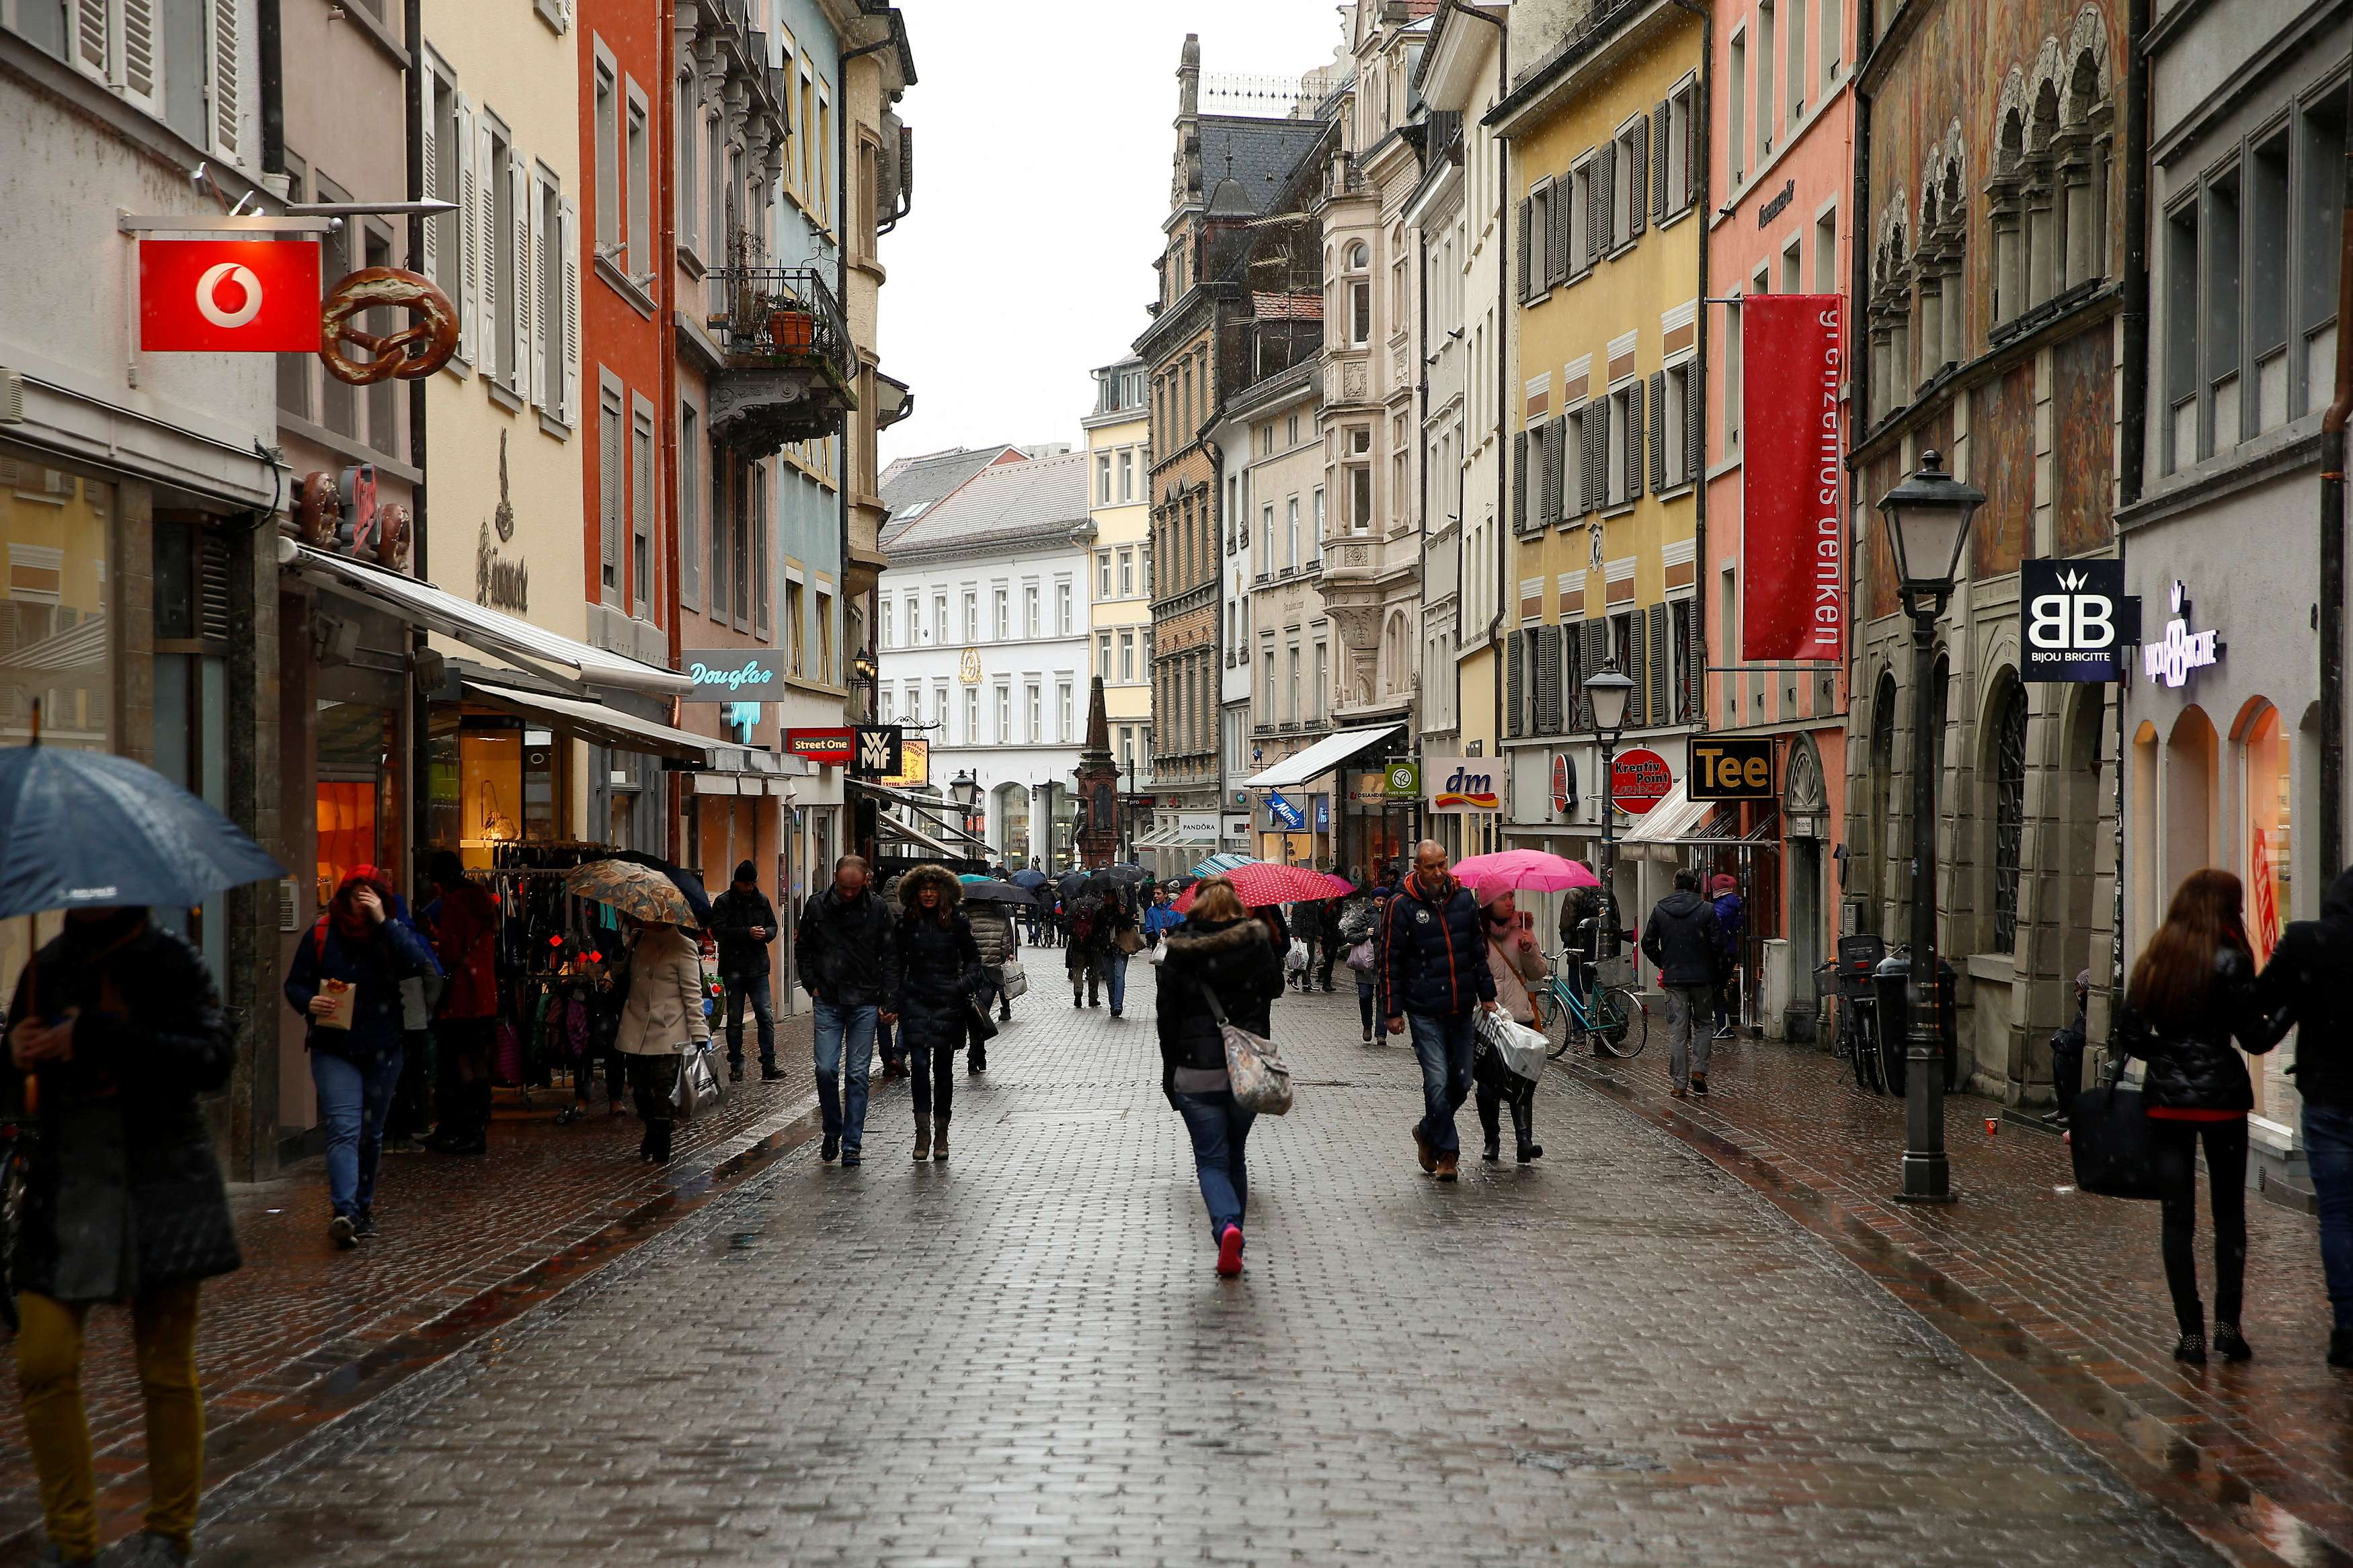 Rua comercial de Konstanz, Alemanha 17/01/2015. REUTERS/Arnd Wiegmann/File Photo